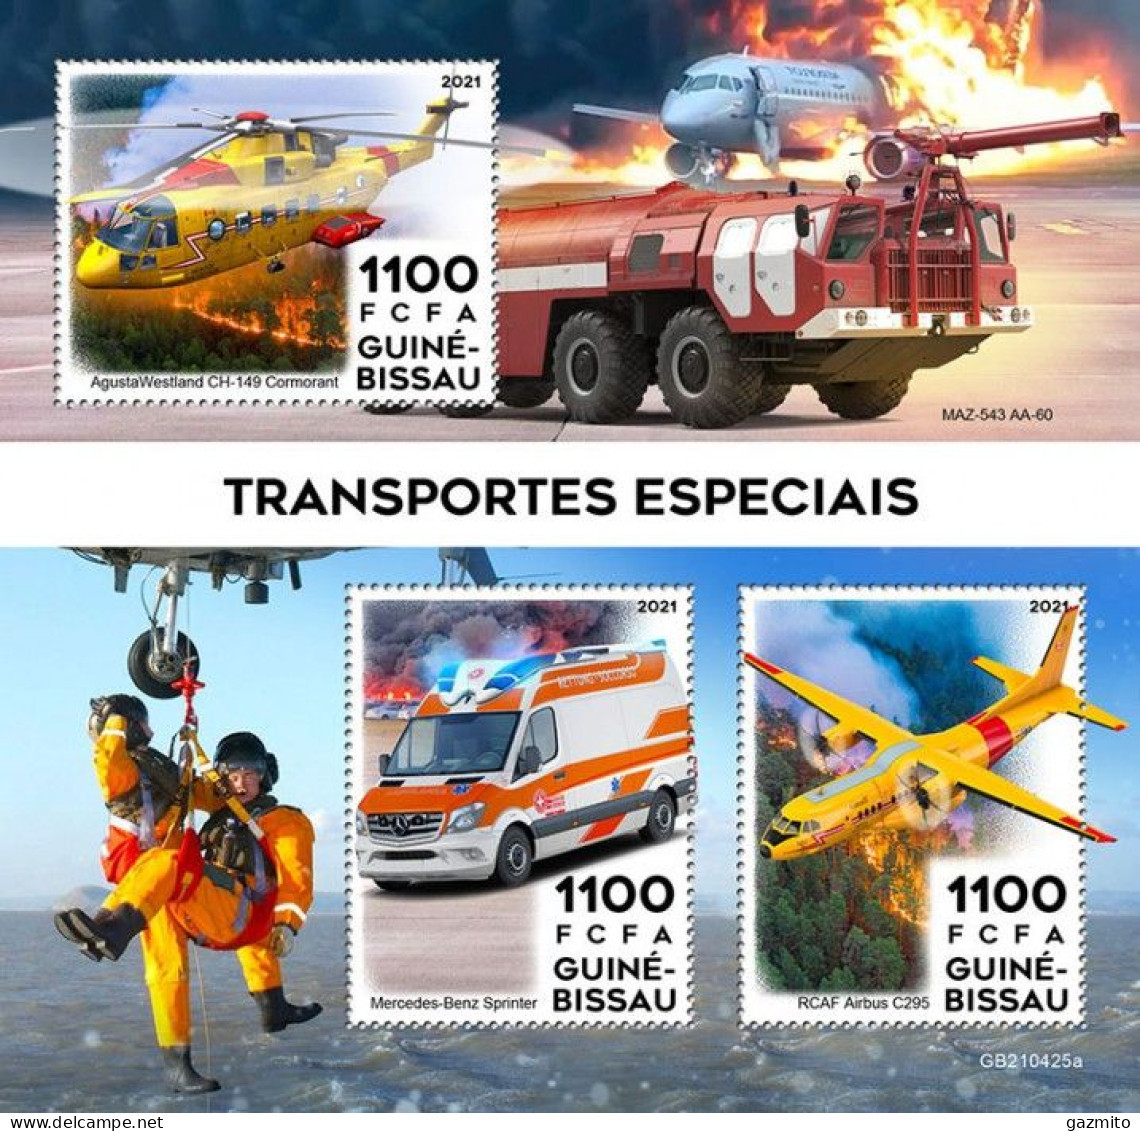 Guinea Bissau 2021, Transport, Helicopter, Plane, Fire Engine, Ambulance, 3val In BF - Guinée-Bissau